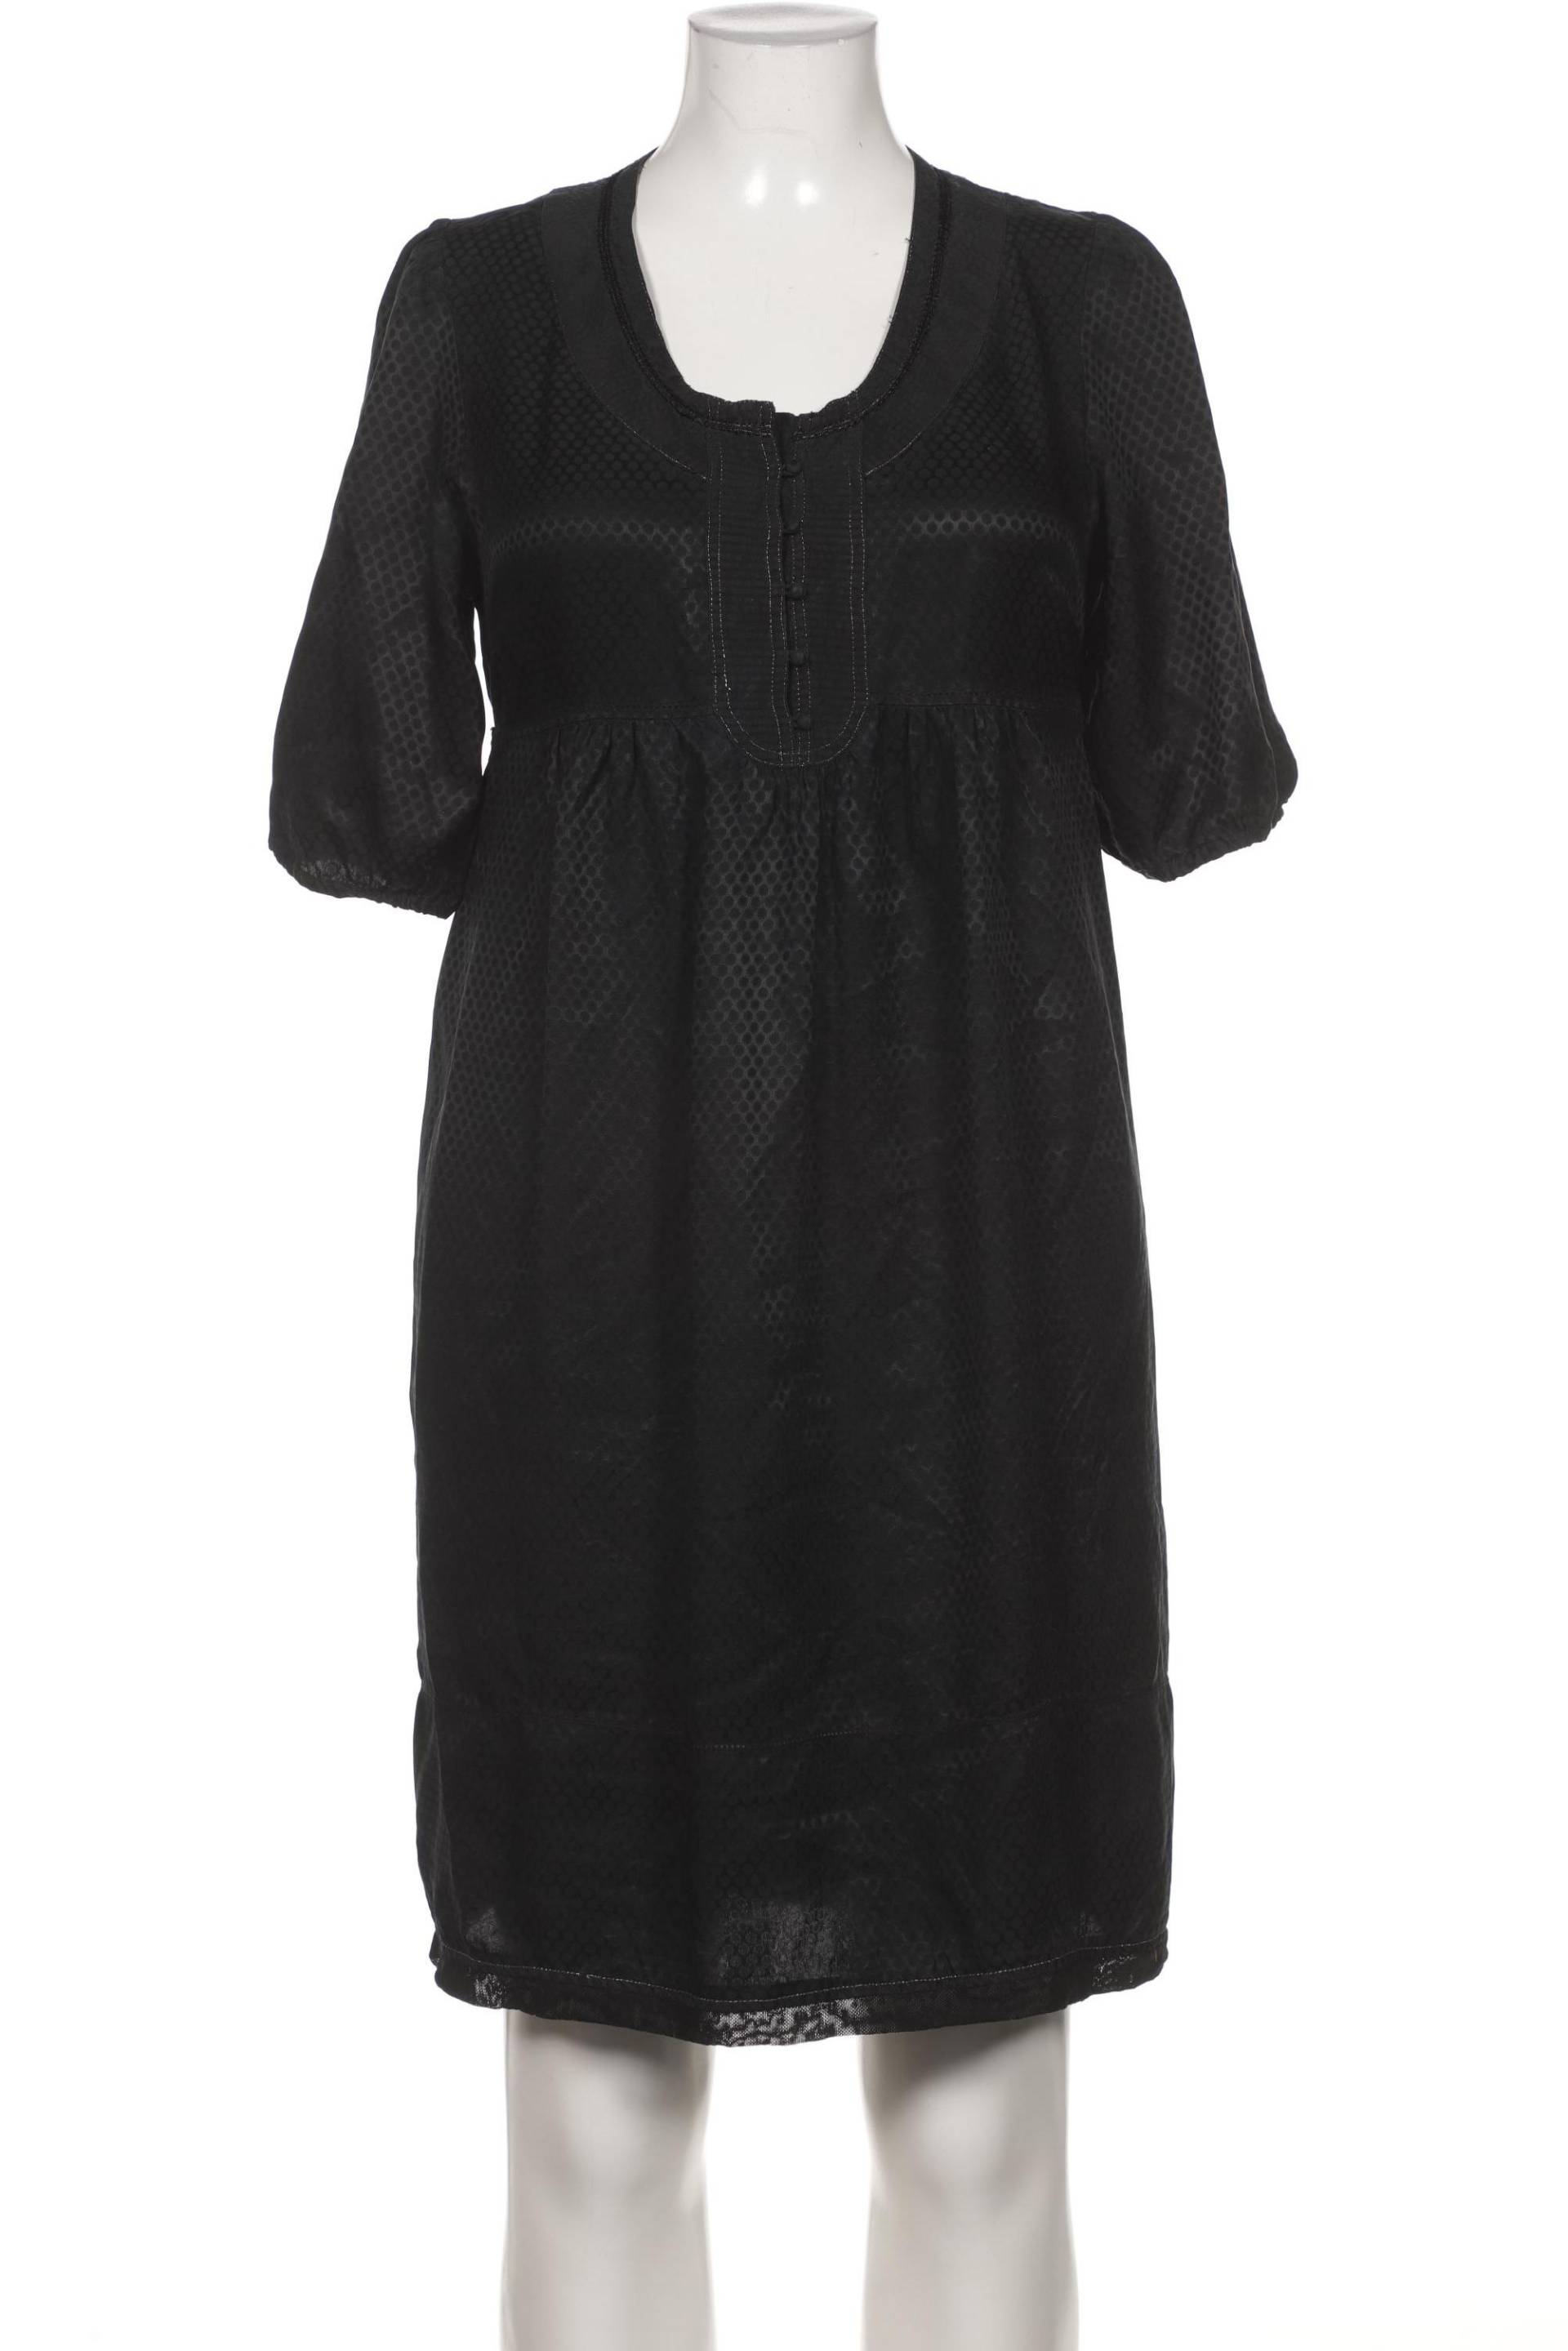 Essentiel Antwerp Damen Kleid, schwarz, Gr. 42 von Essentiel Antwerp